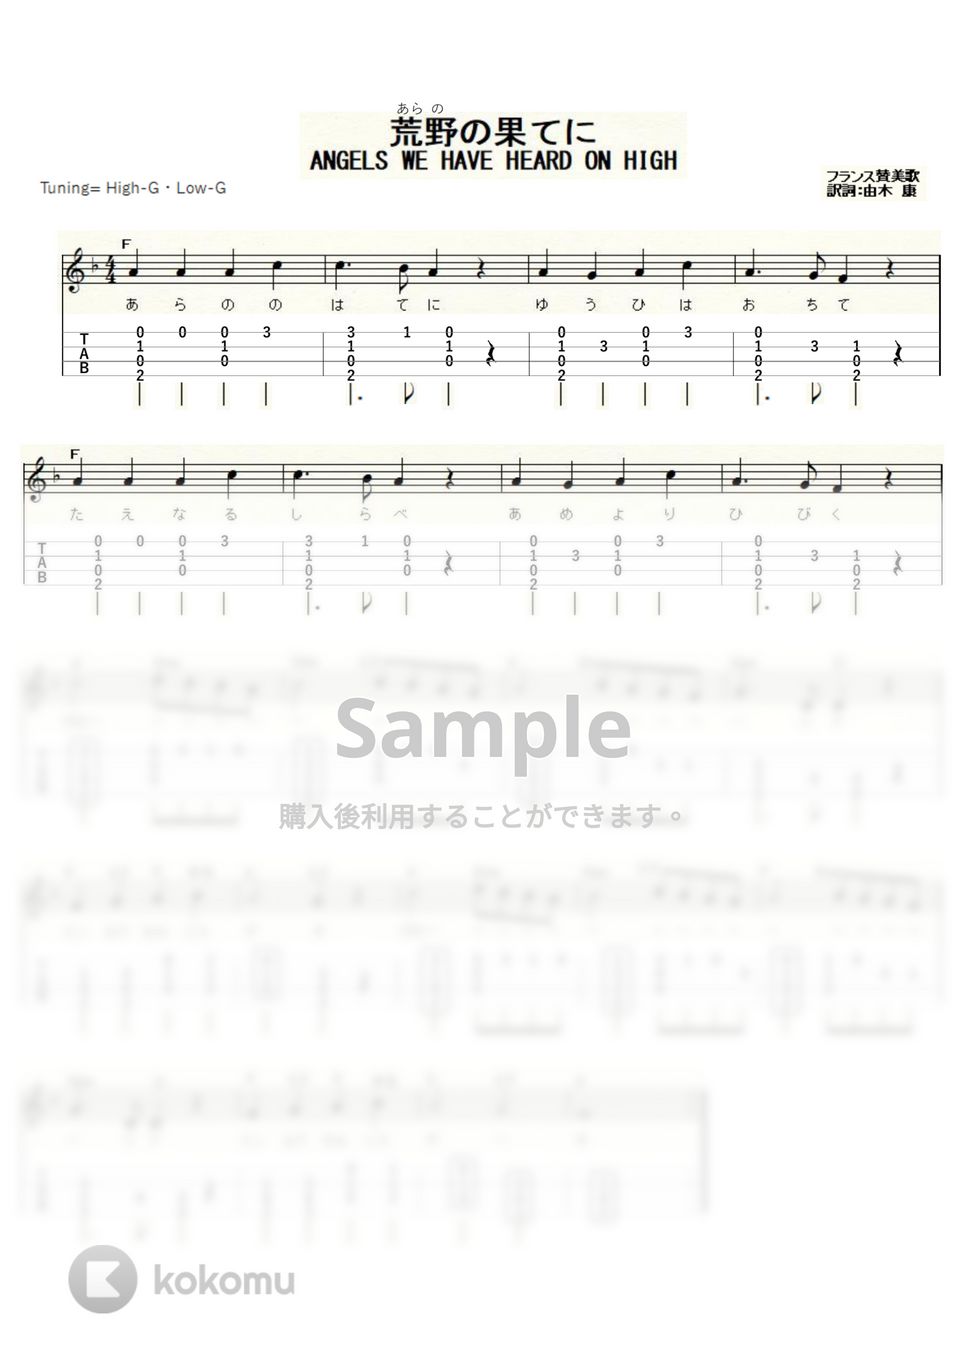 クリスマスソング - 荒野の果てに (ｳｸﾚﾚｿﾛ / High-G,Low-G / 初級) by ukulelepapa